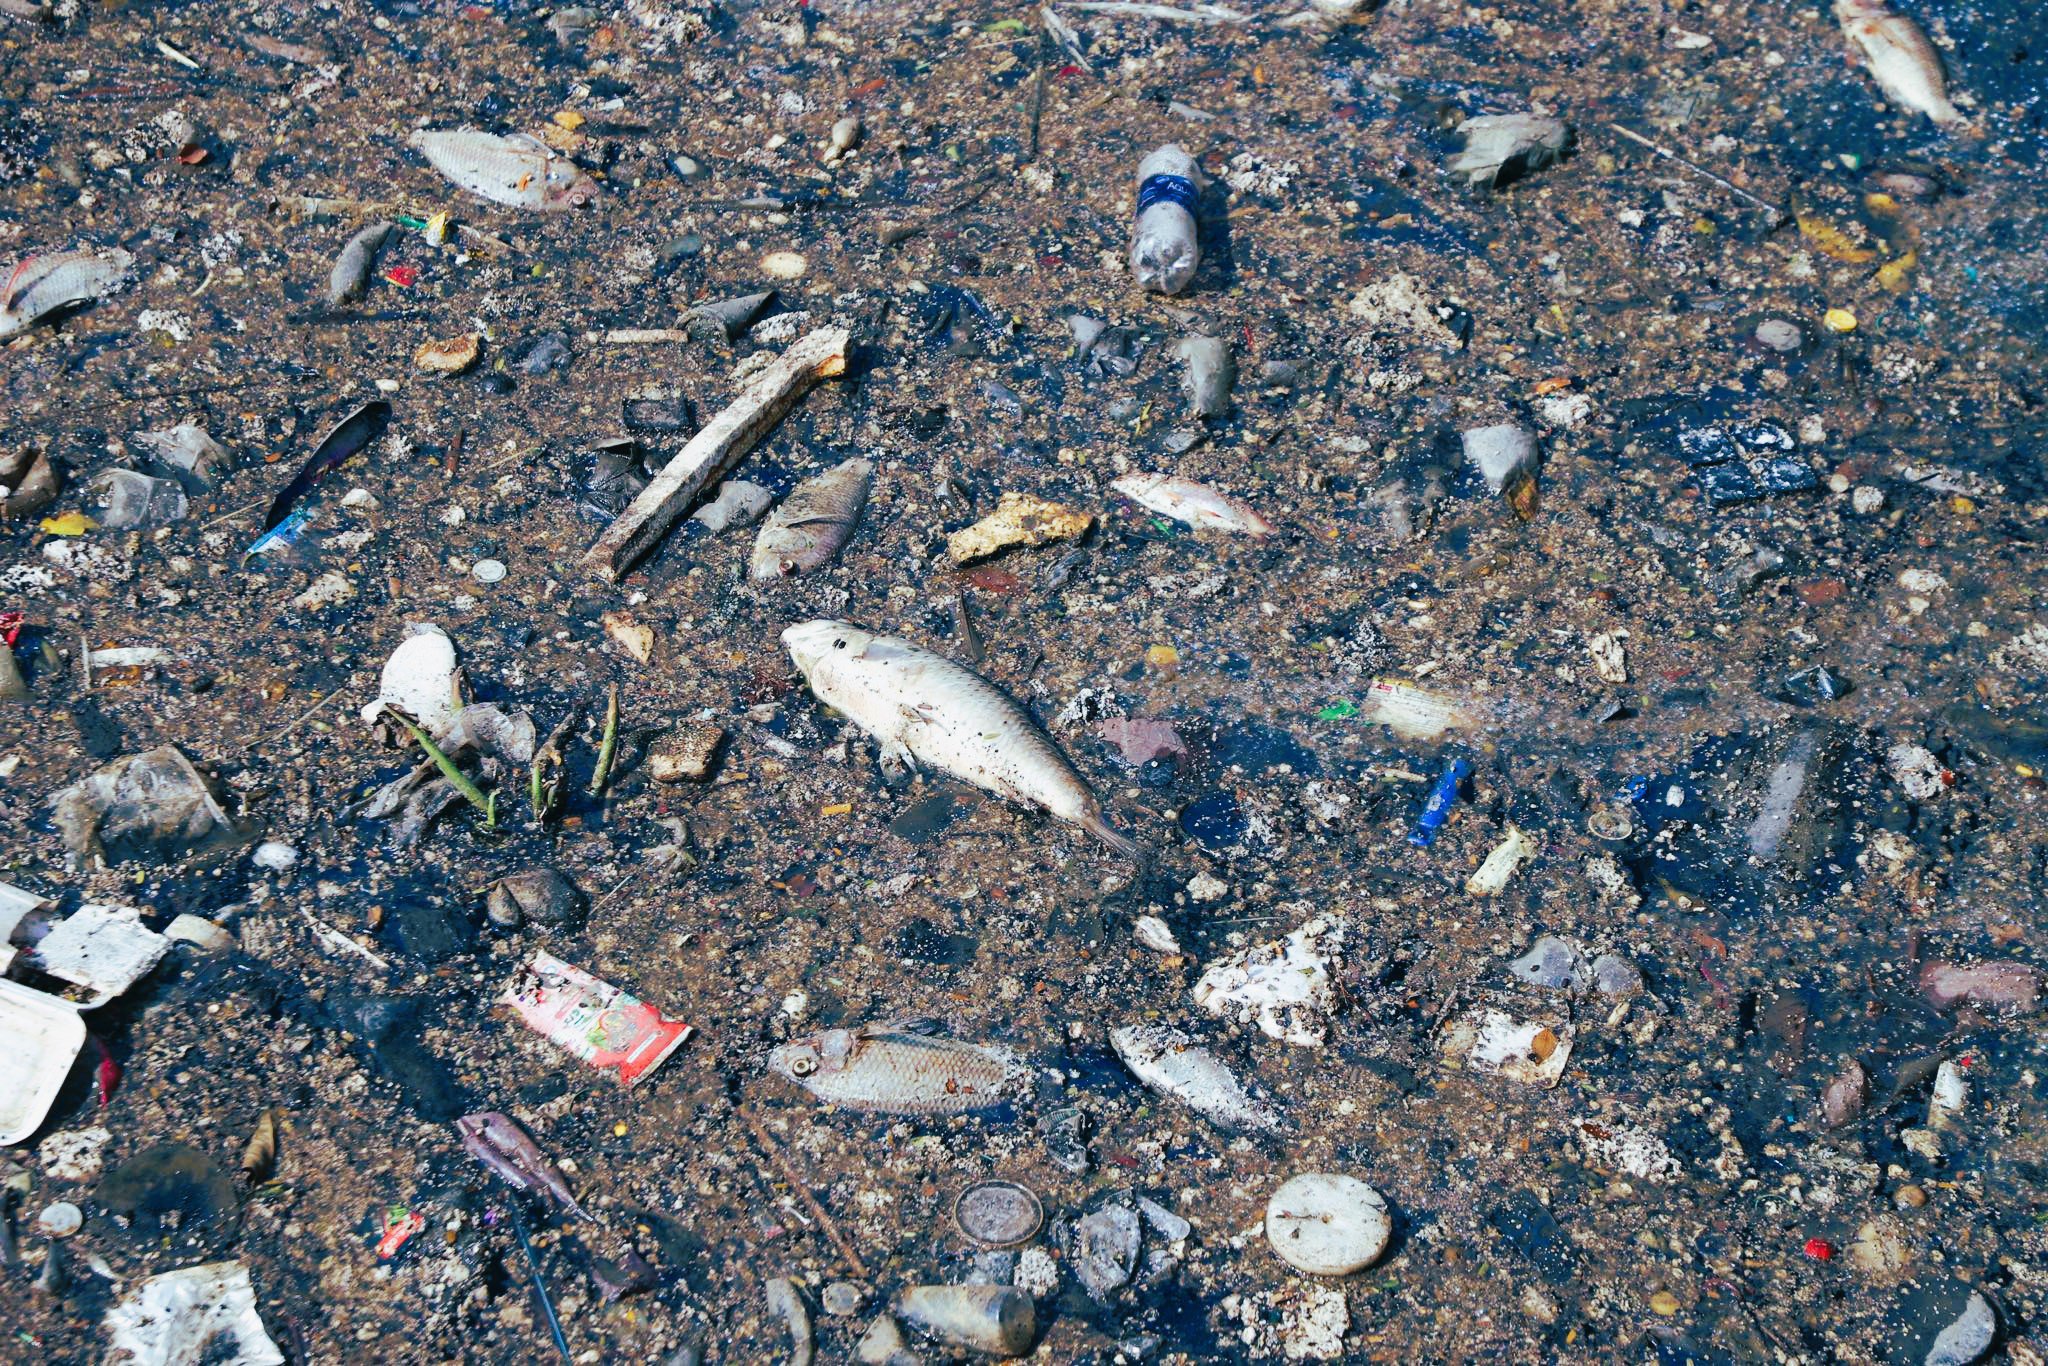  Đa số cá chết là cá rô phi, cá chép… nổi lềnh bềnh trên mặt nước xen lẫn với rác thải.